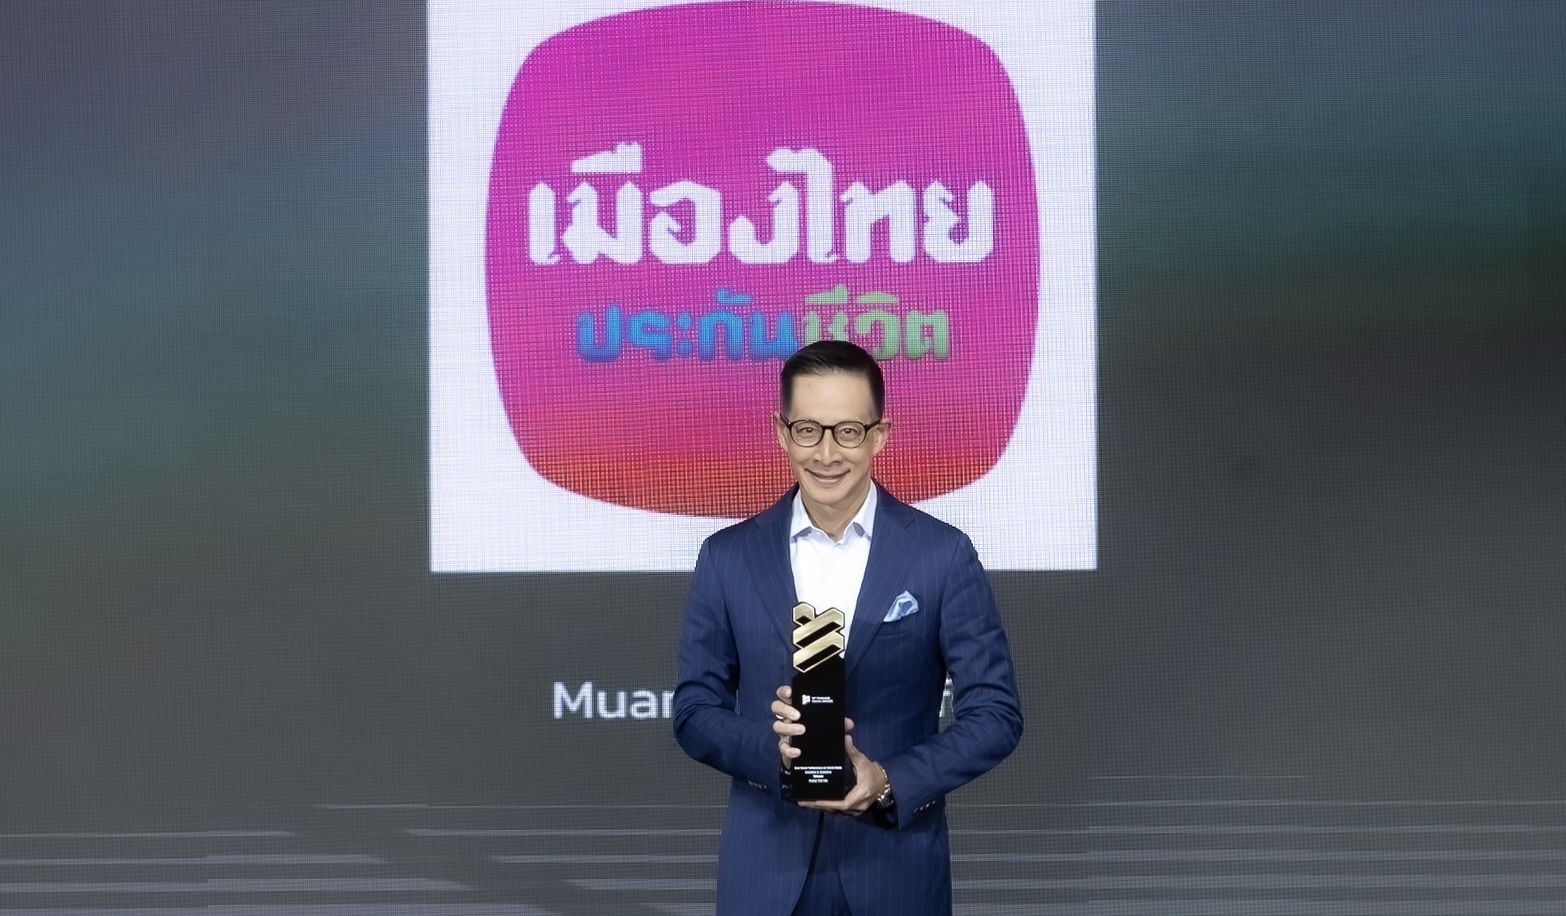 เมืองไทยประกันชีวิตคว้า 2 รางวัล จากเวที Thailand Social Awards ครั้งที่ 12Best Brand Performance on Social Media สาขา Insurance & Assuranceและ Best Brand Performance Campaign on TikTok